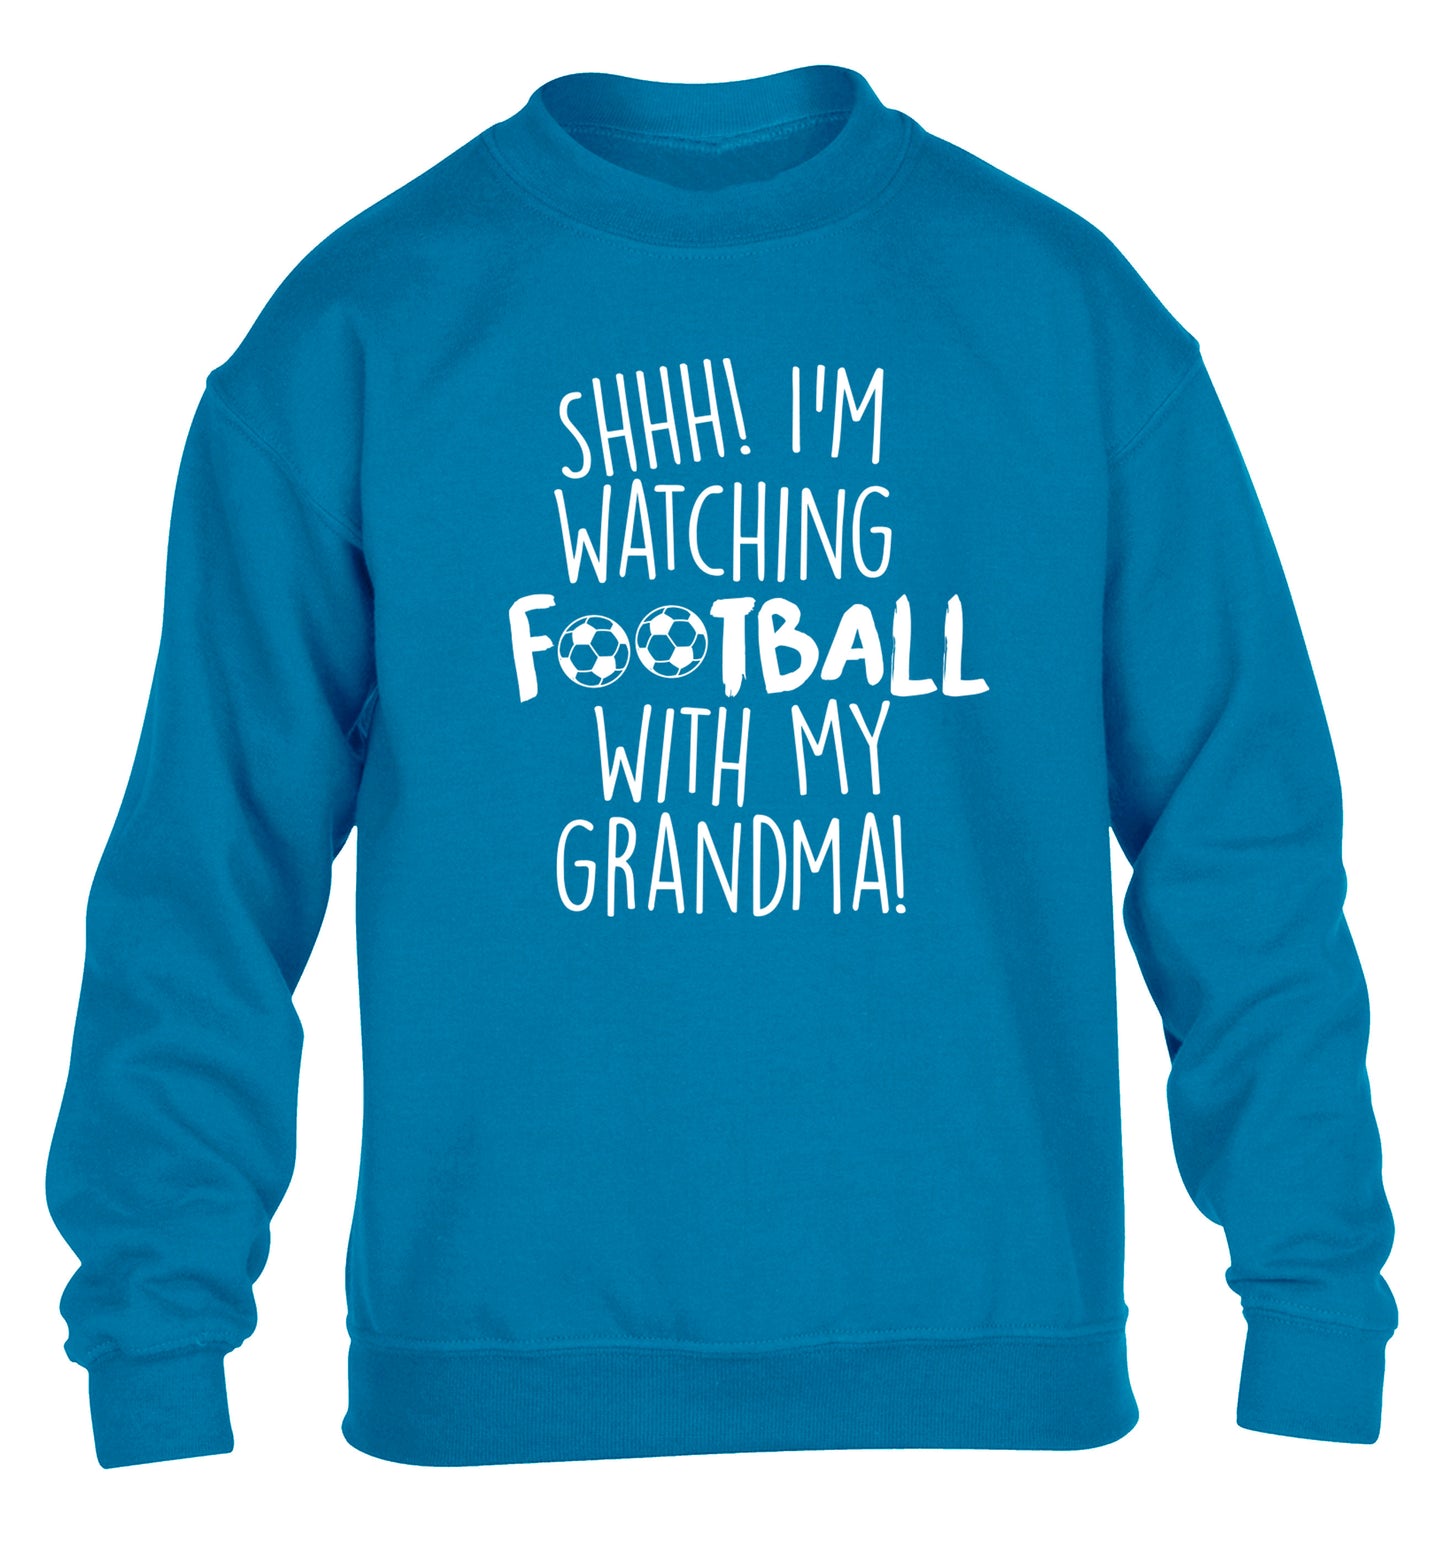 Shhh I'm watching football with my grandma children's blue sweater 12-14 Years